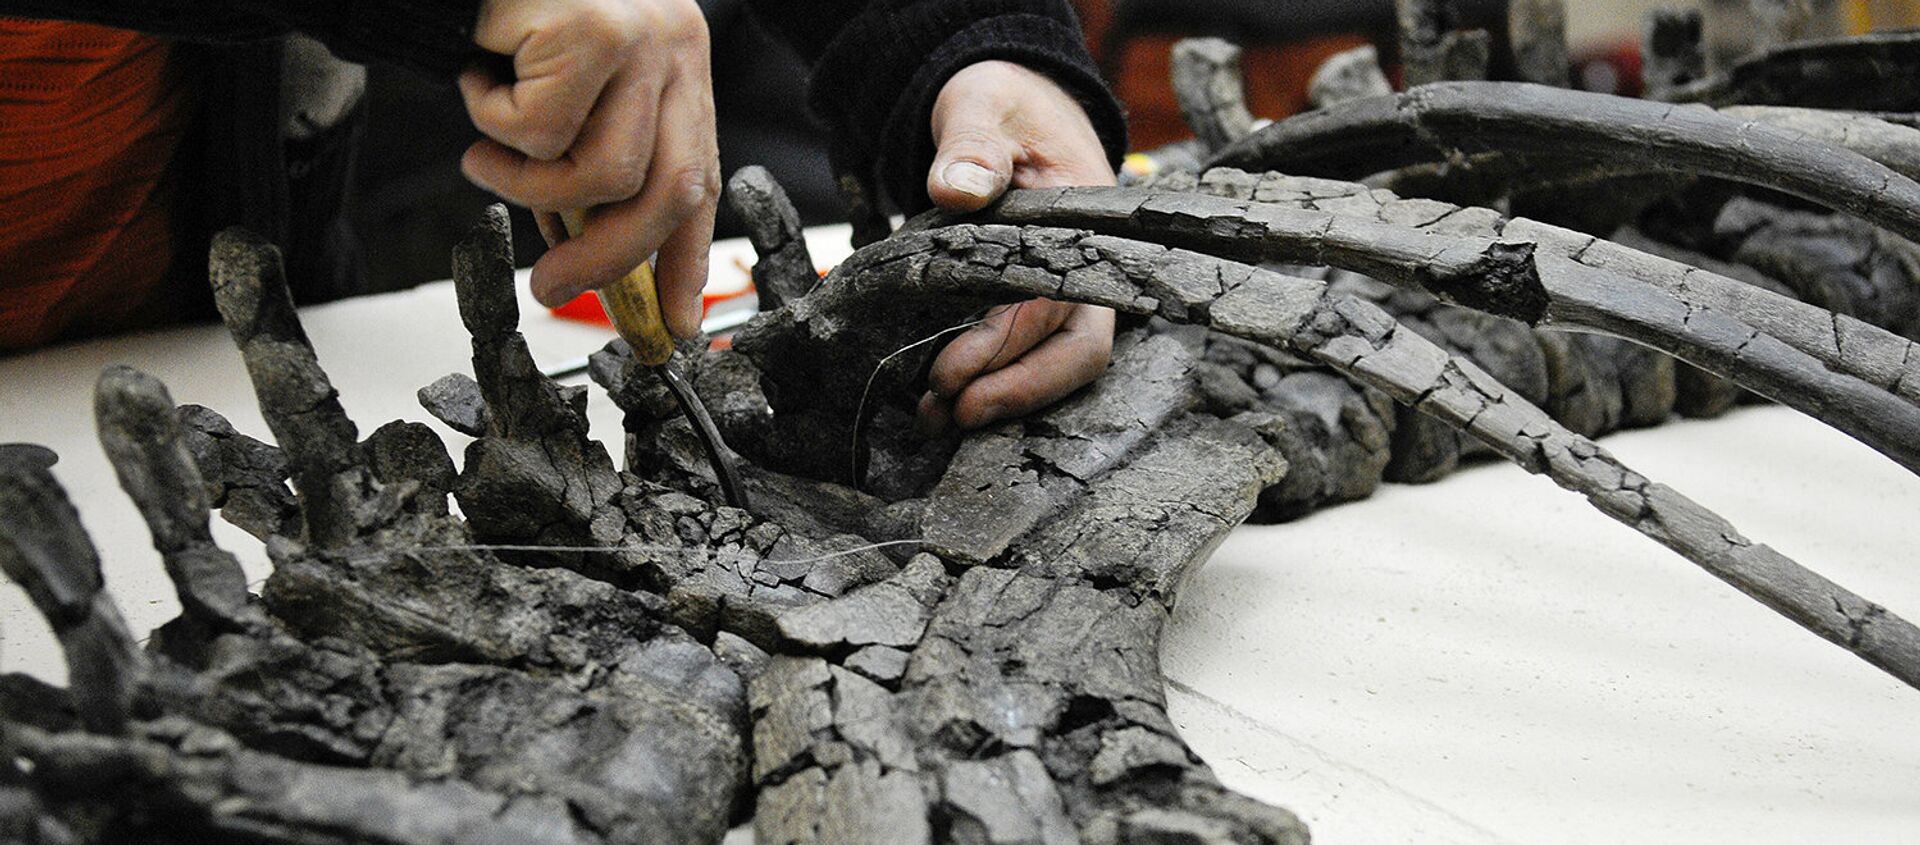 Палеонтолог восстанавливает по фрагментам скелет динозавра - Sputnik Узбекистан, 1920, 05.06.2020